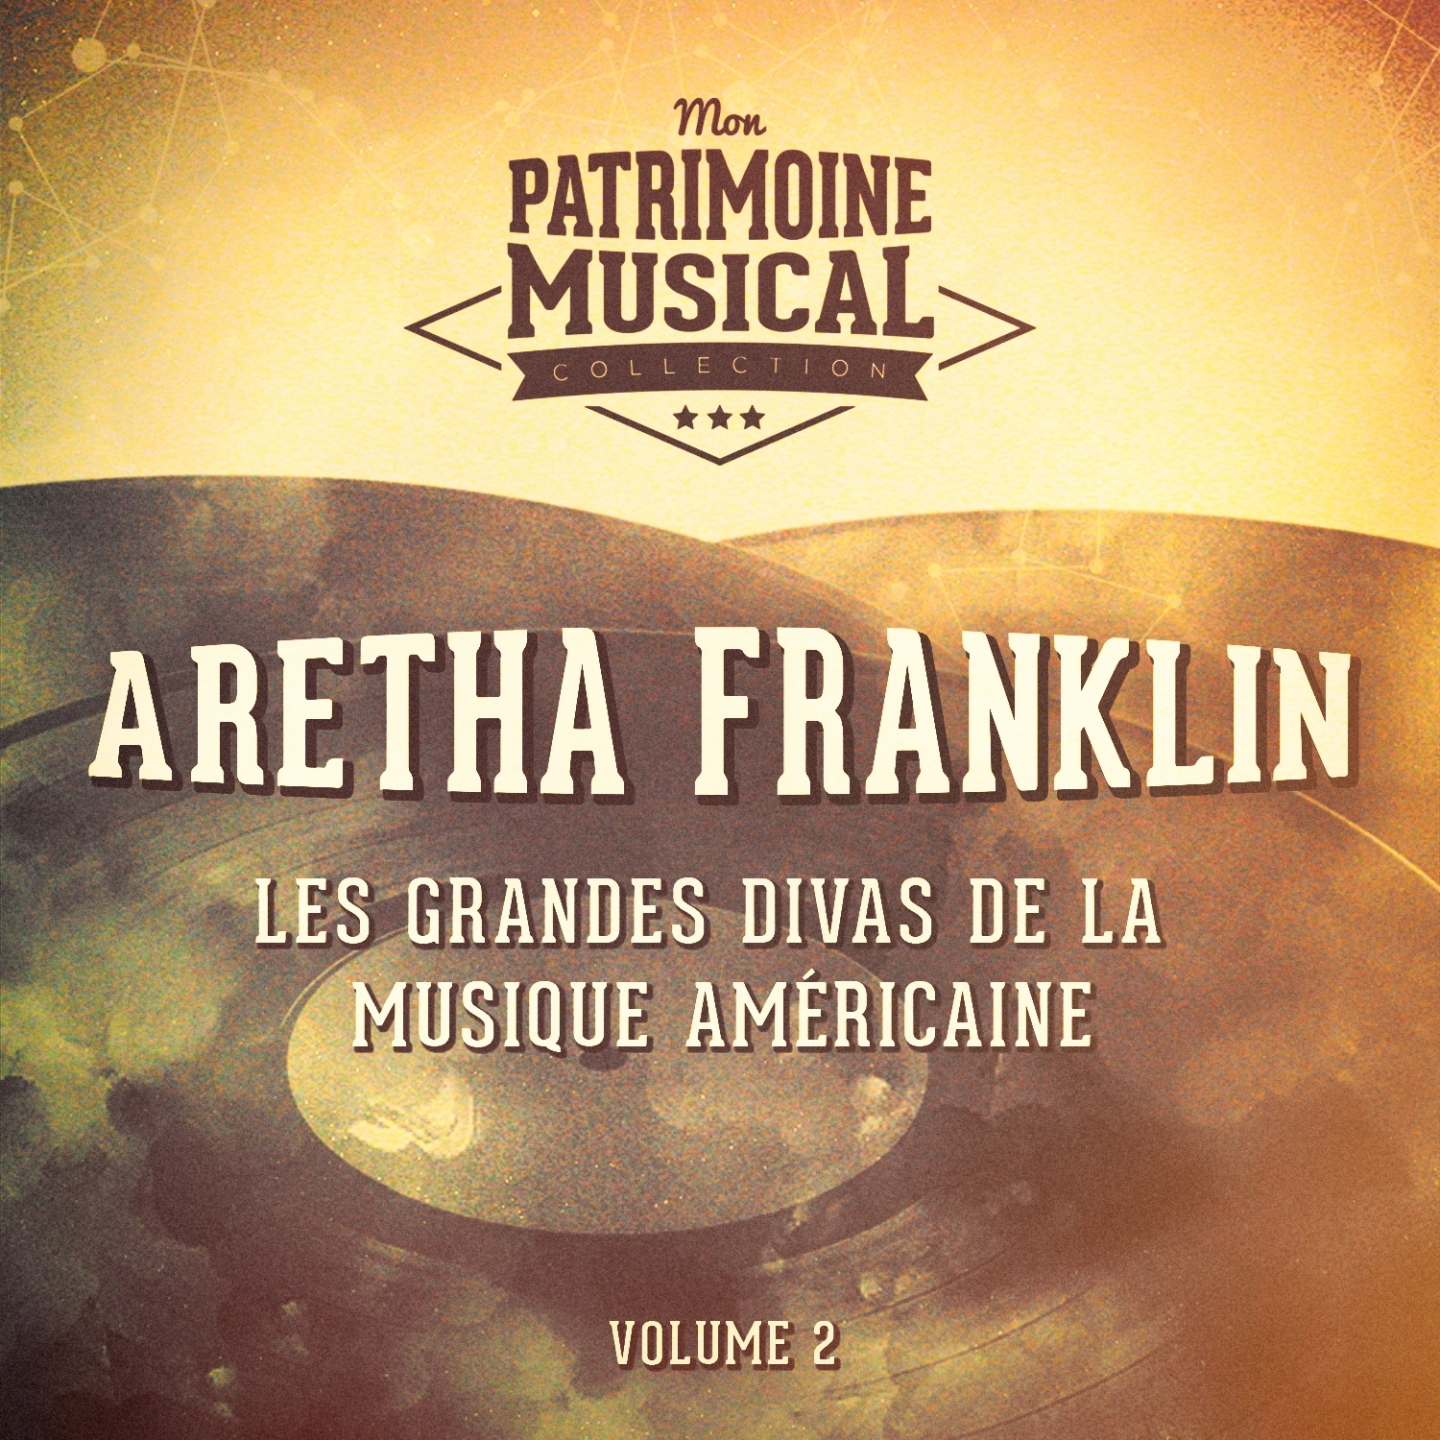 Les Grandes Divas De La Musique Ame ricaine: Aretha Franklin, Vol. 2